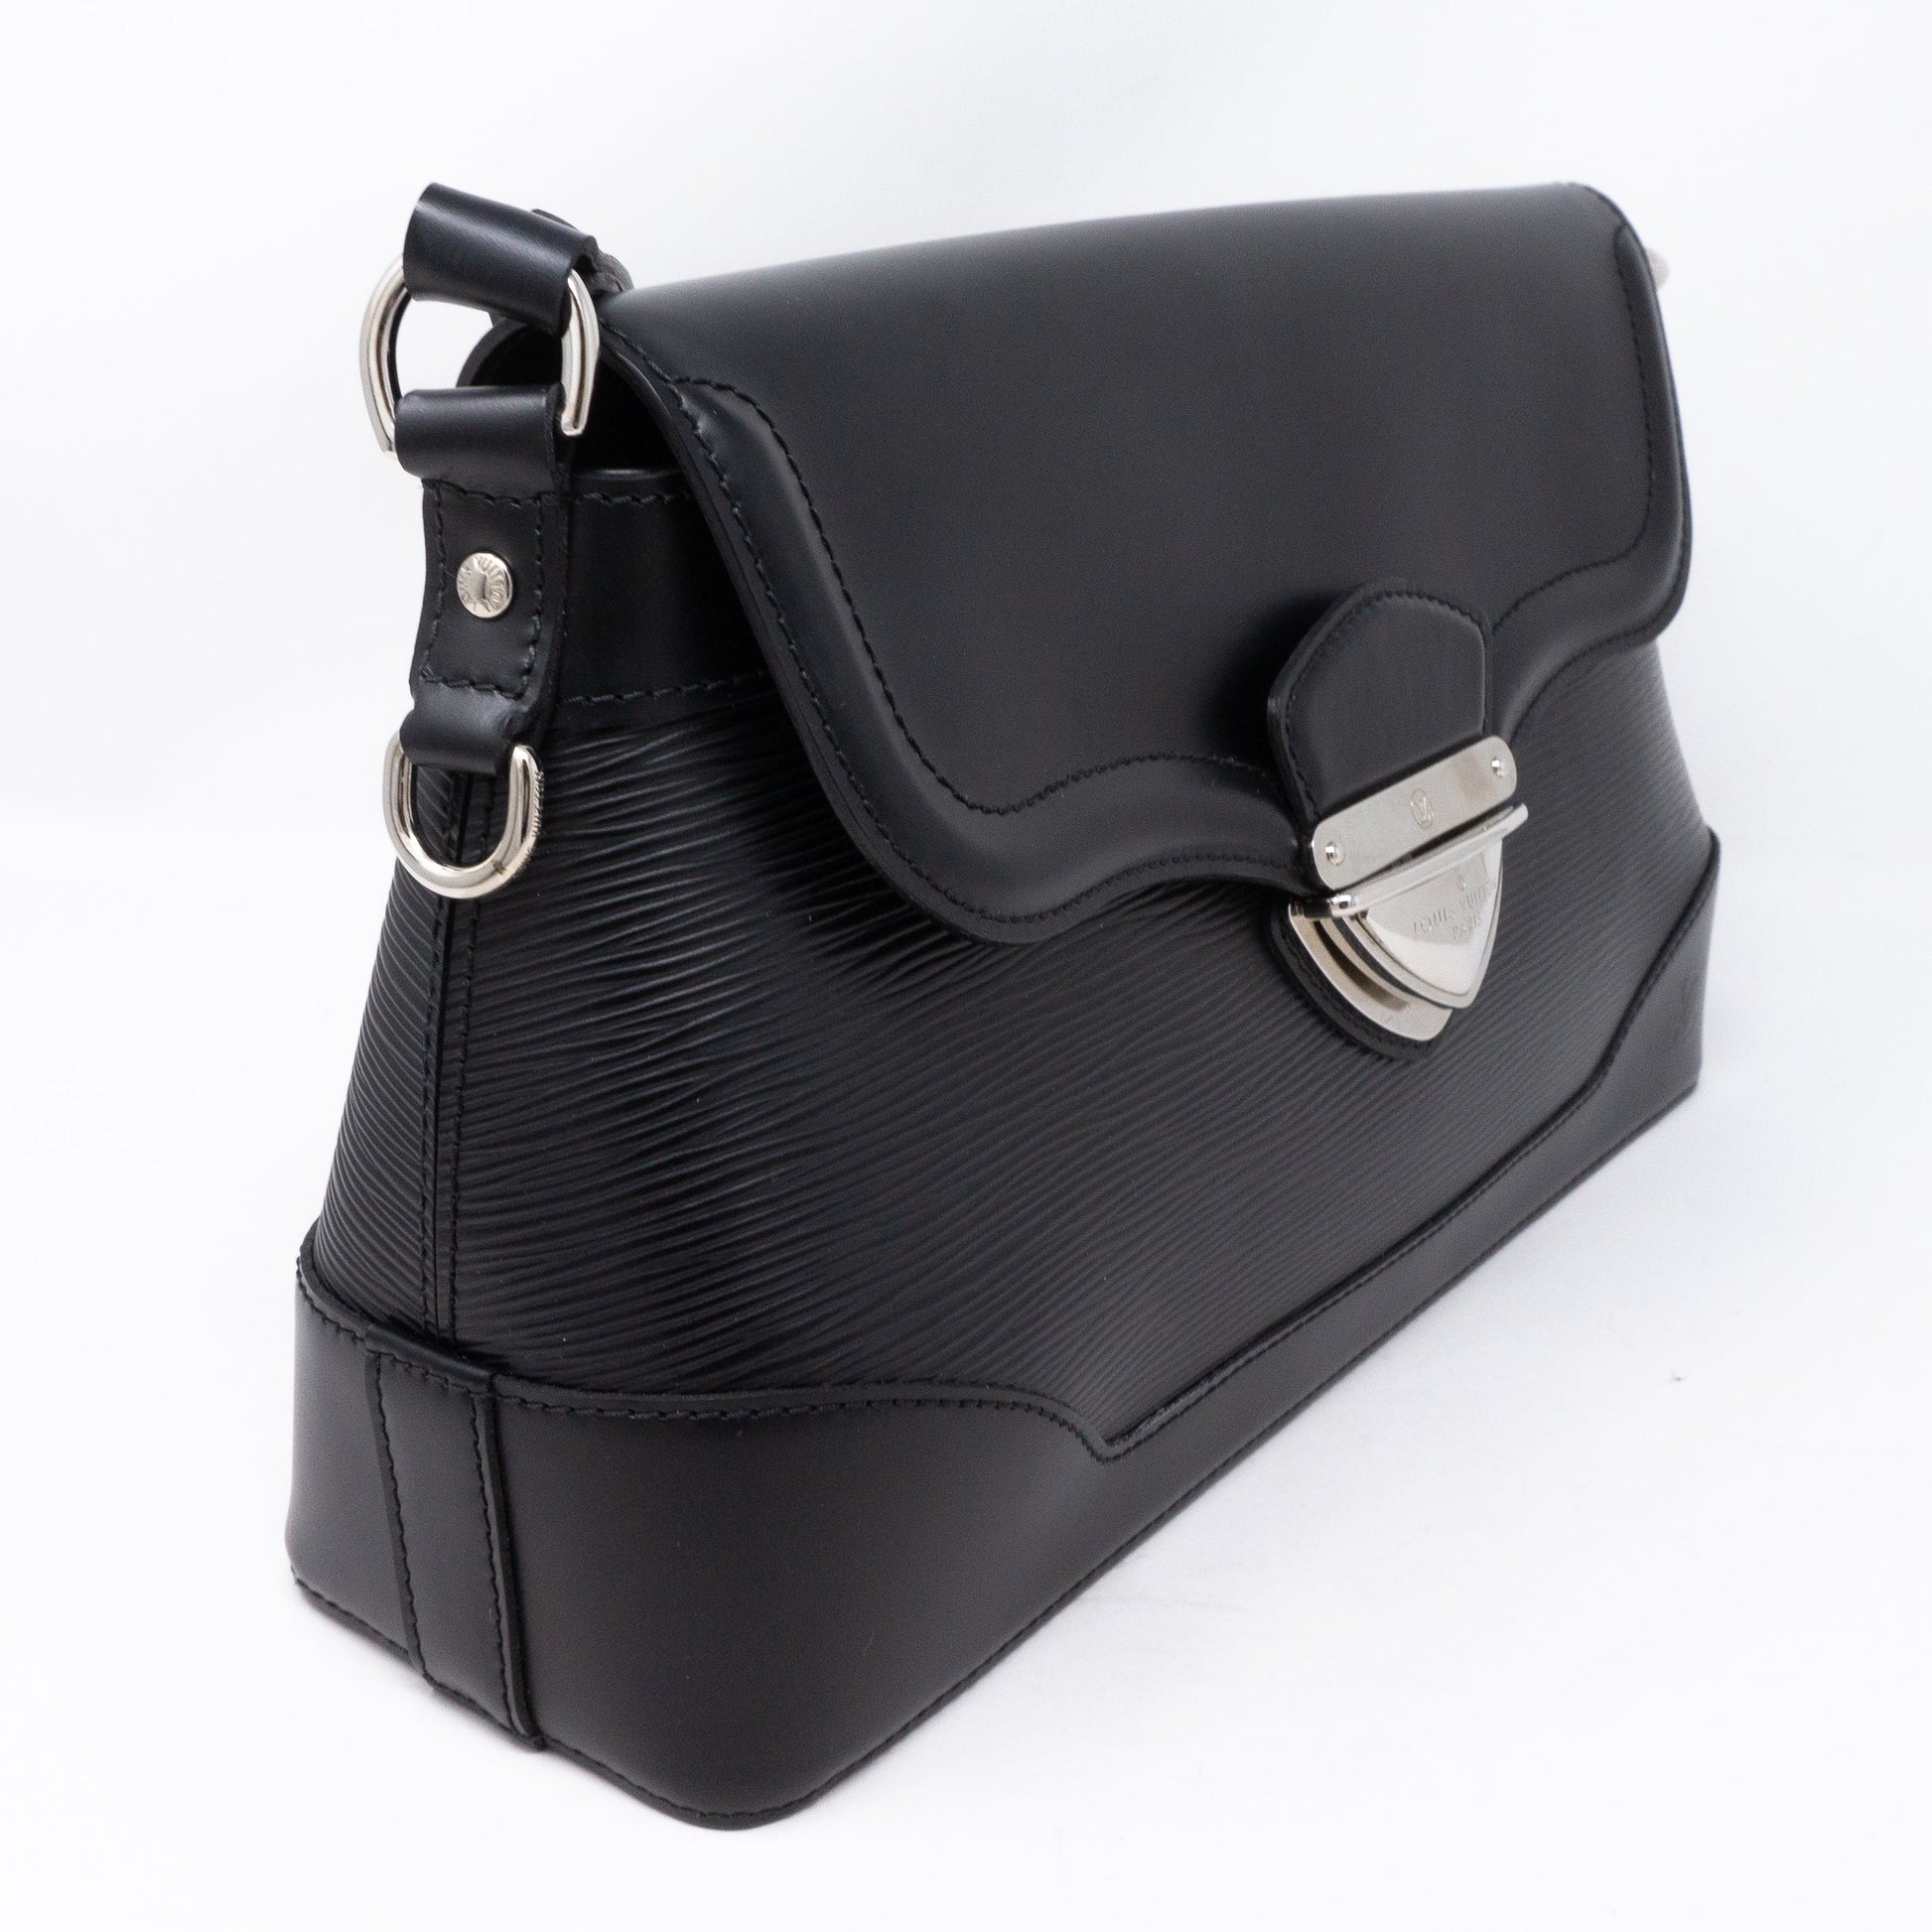 Louis Vuitton - Bagatelle PM Epi Leather Noir